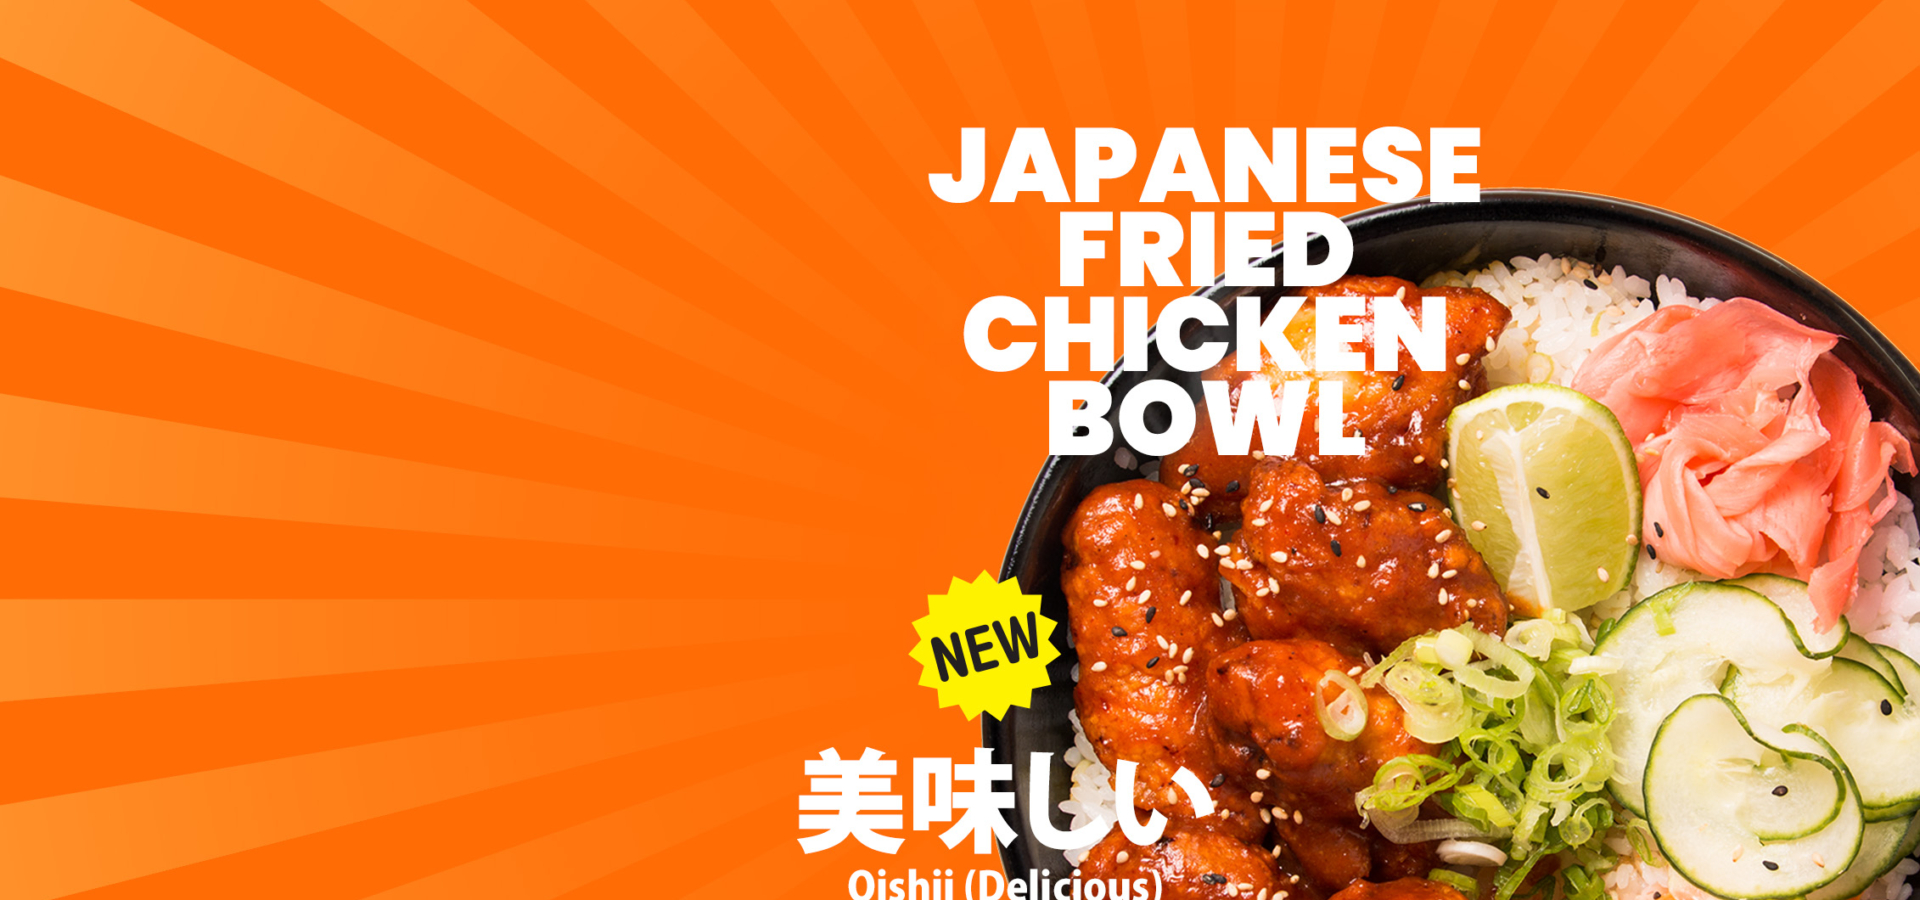 Japanese friend chicken bowlx